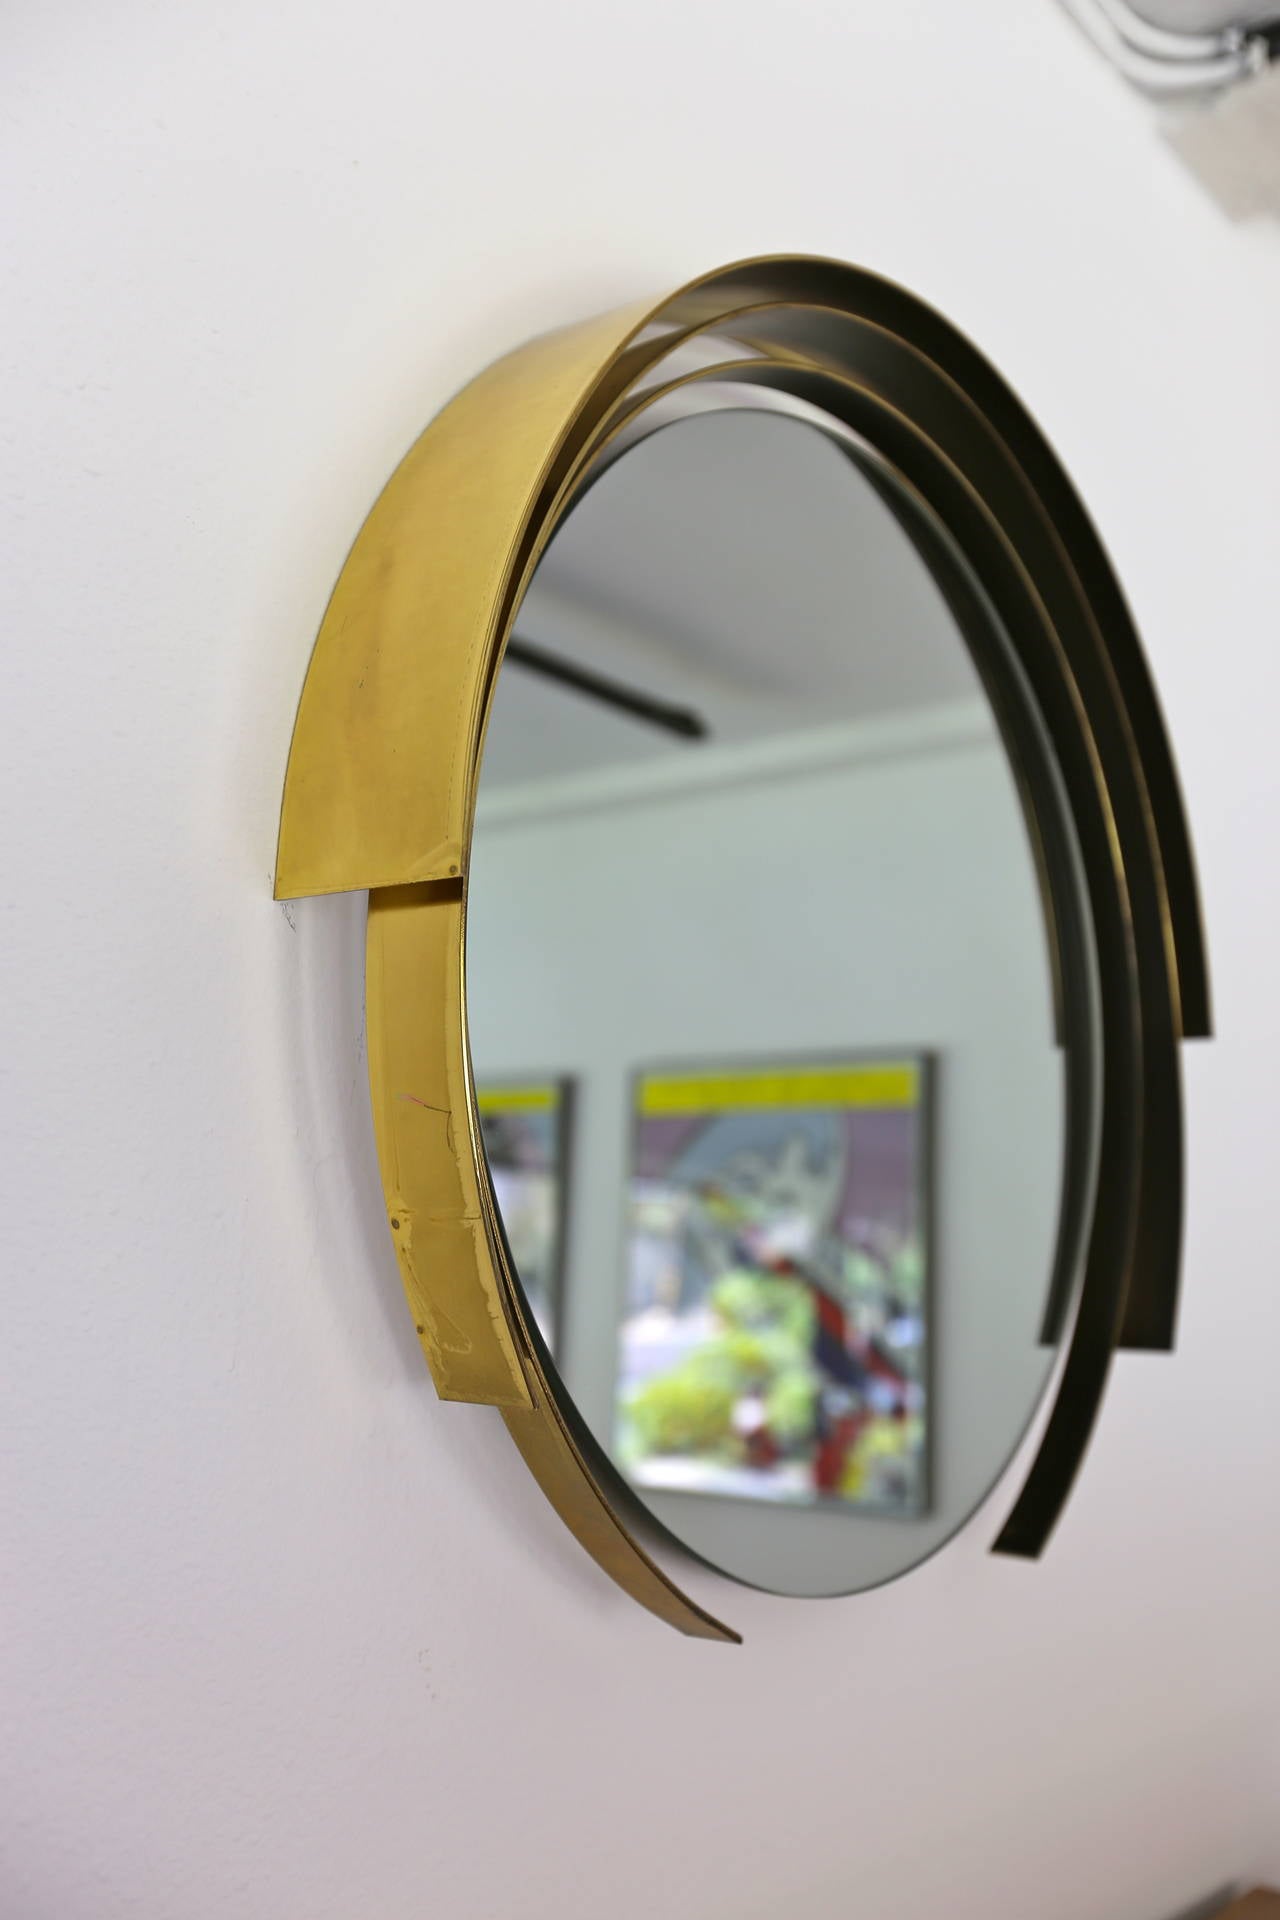 Round brass modernist mirror signed C.Jere, 1982. (Curtis Jere).